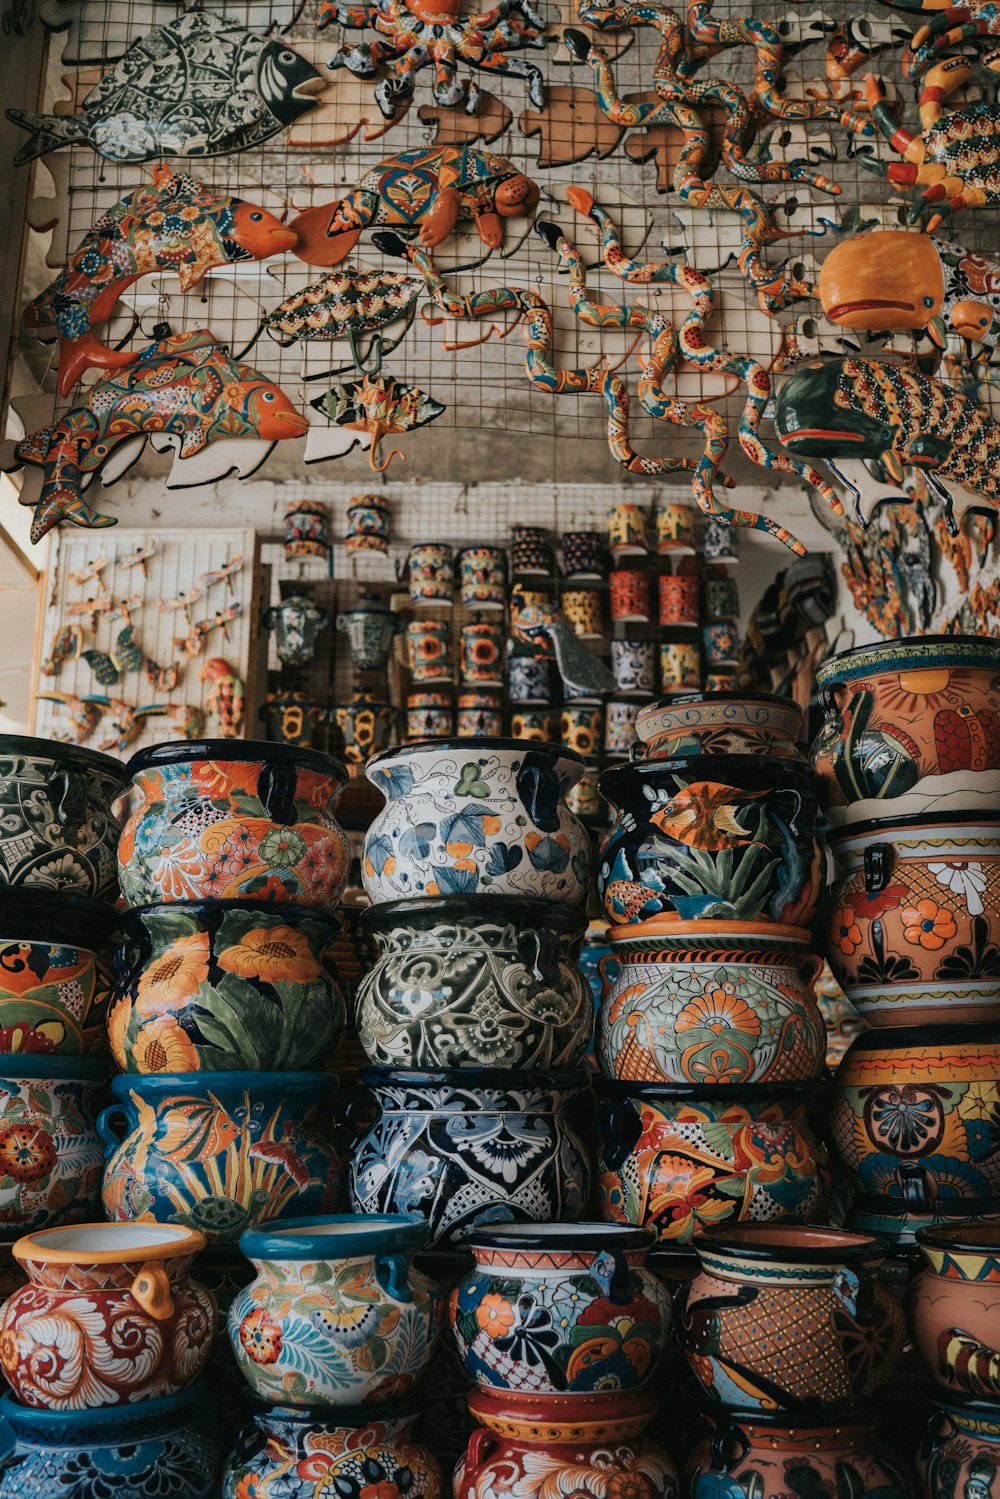 vasi di terracotta di colori assortiti disposti insieme